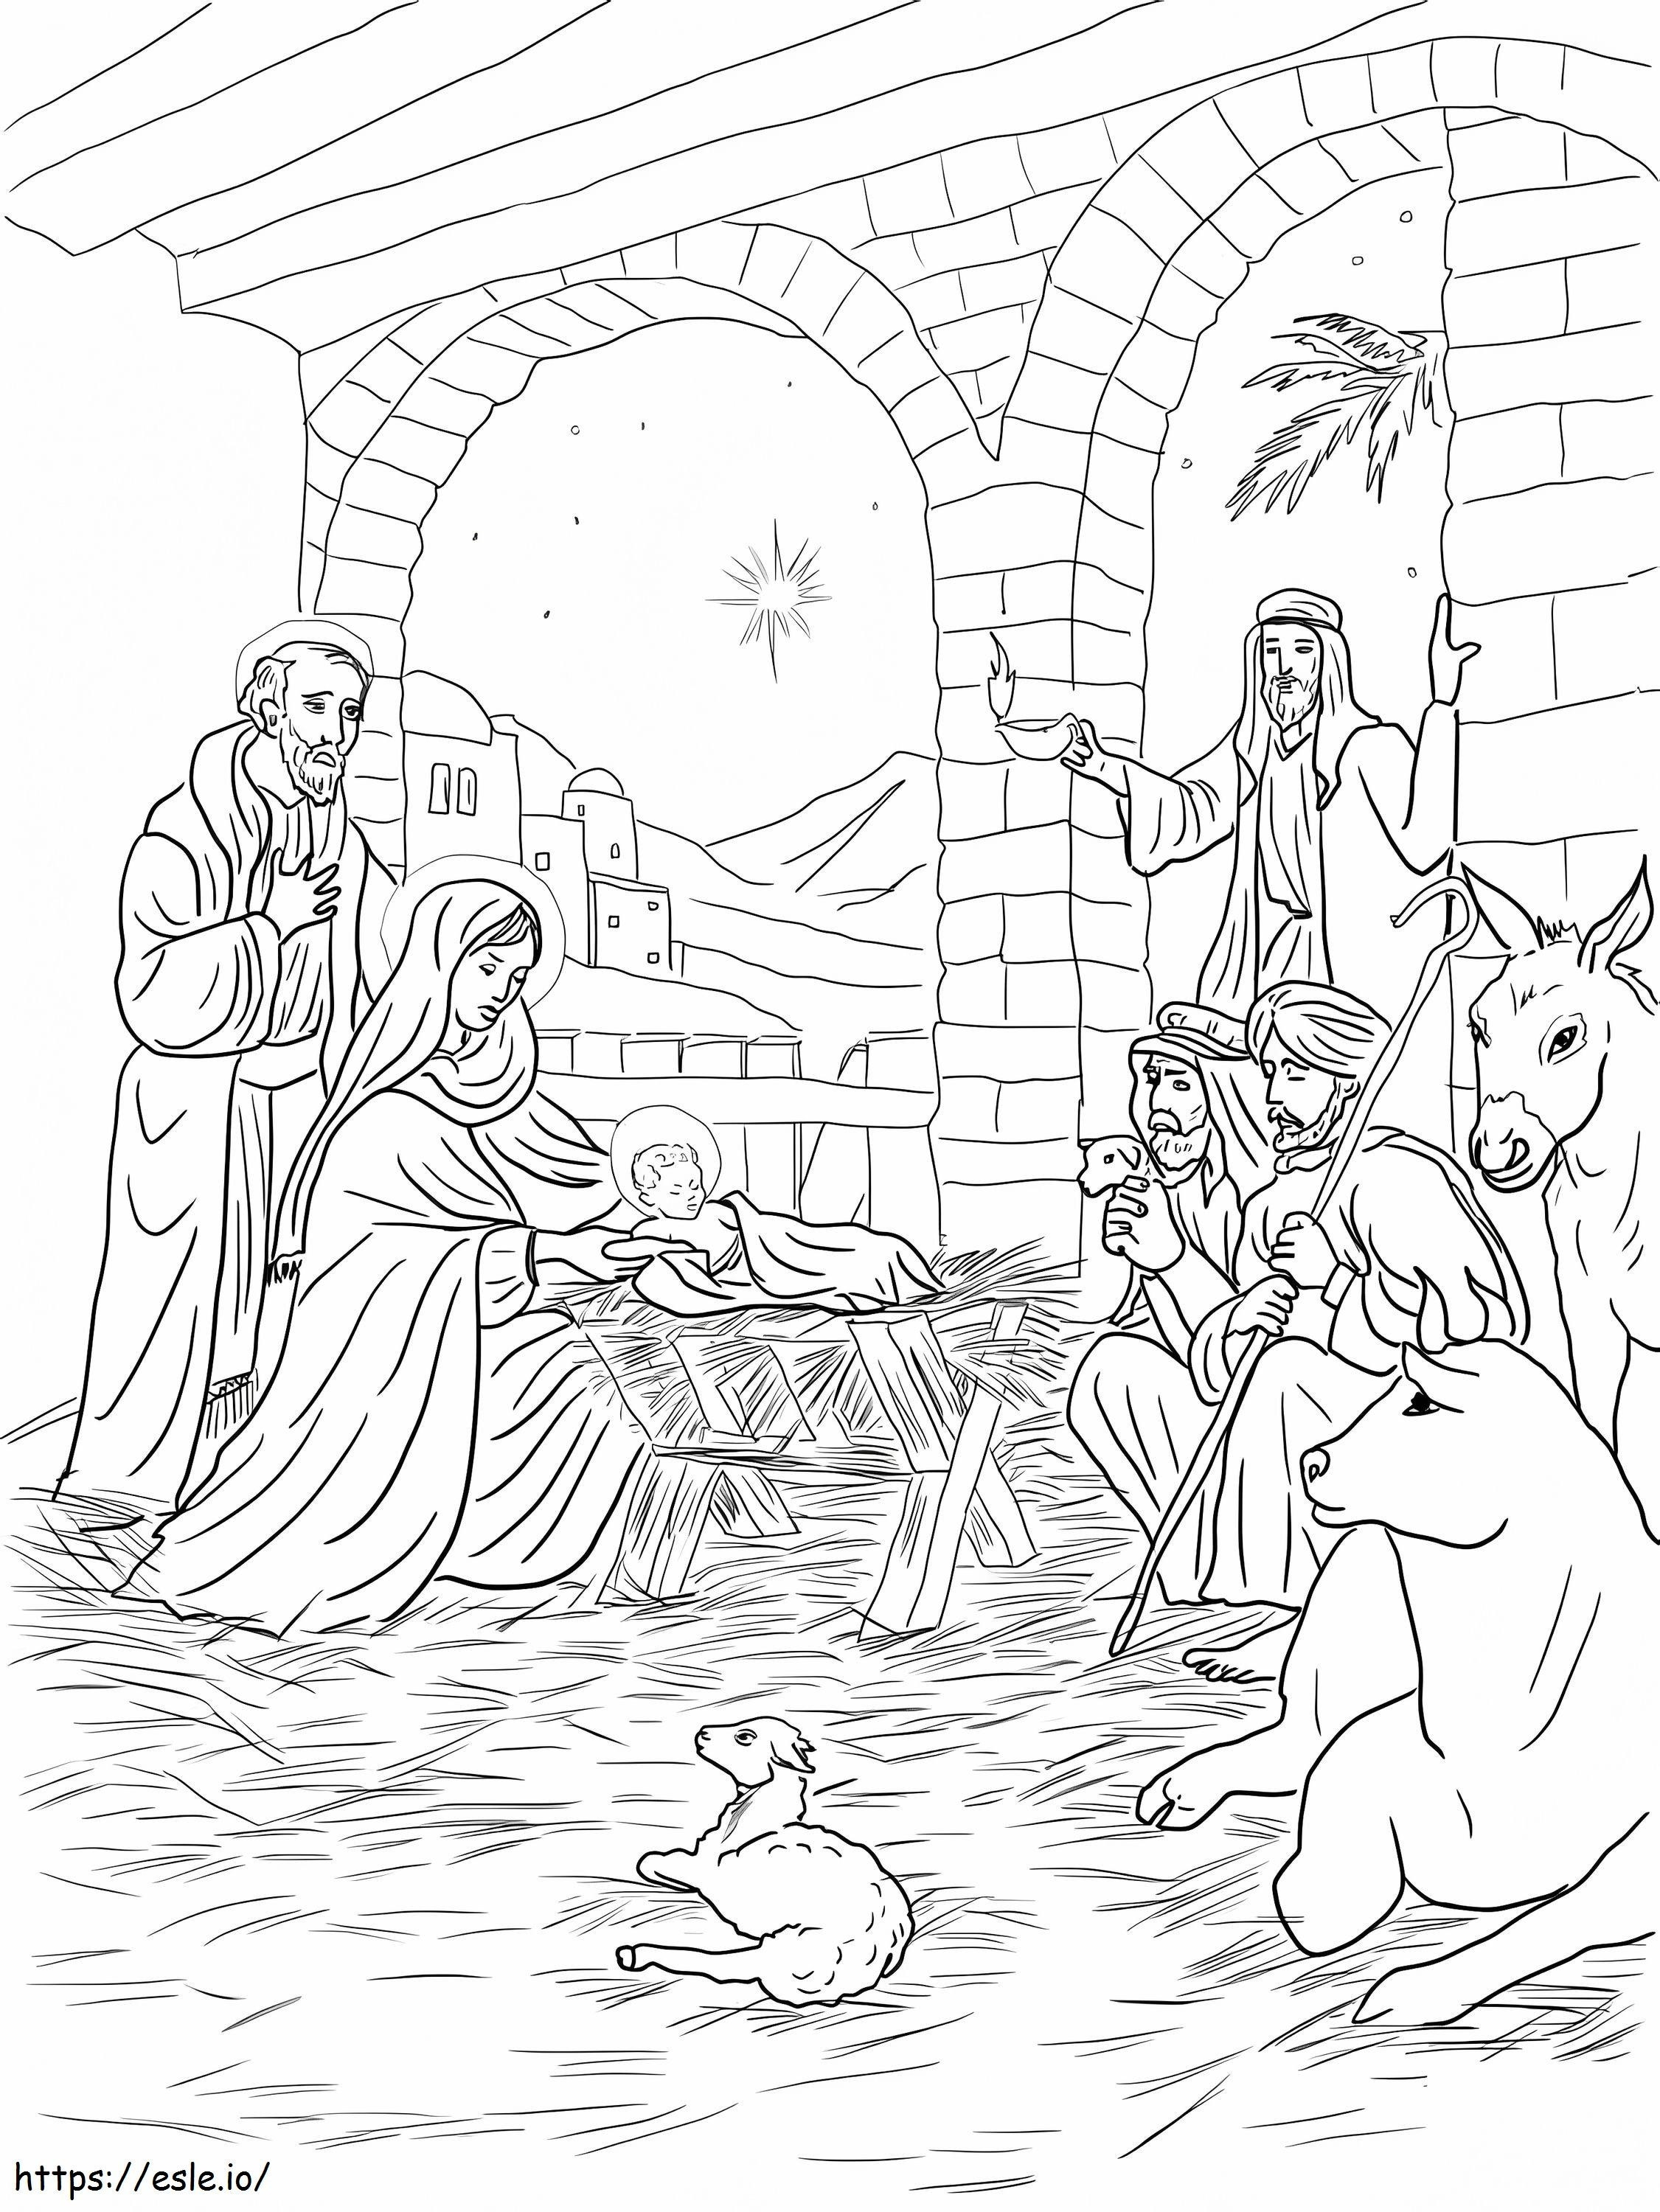 Çobanlar Bebek İsa'yı Görmeye Geliyor boyama